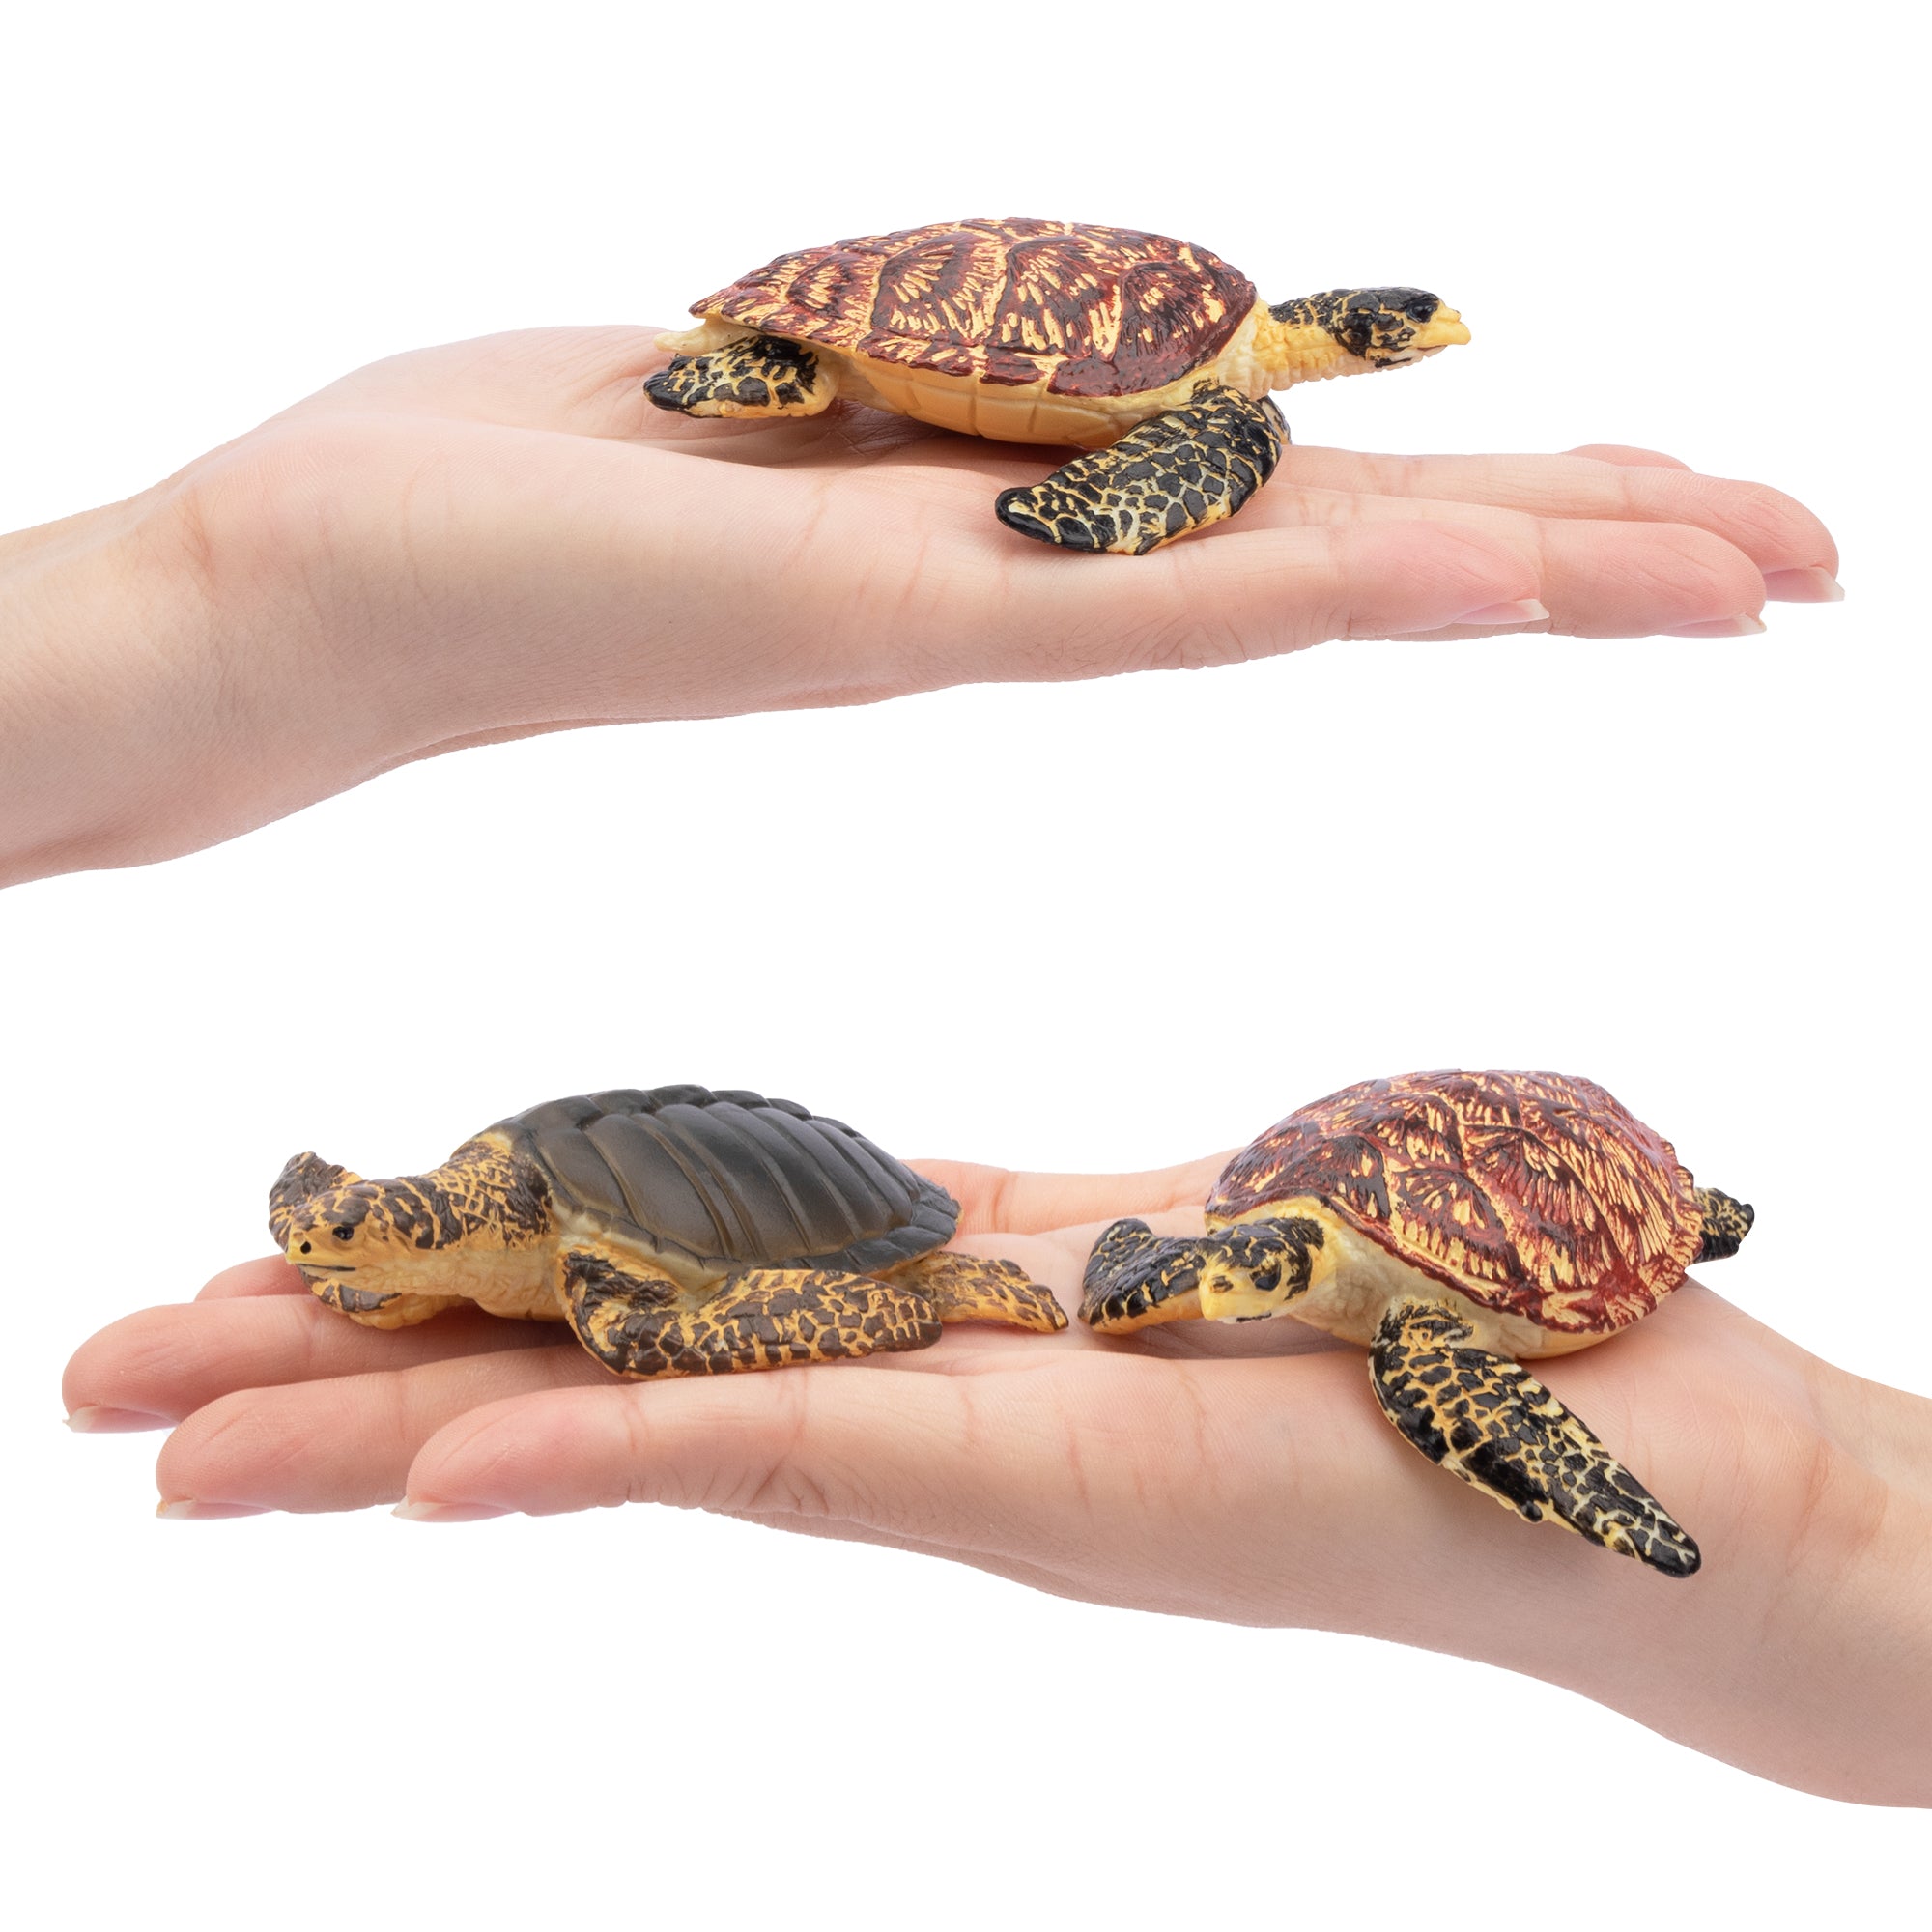 6-Piece Sea Turtle Animal Figurines Playset-on hand